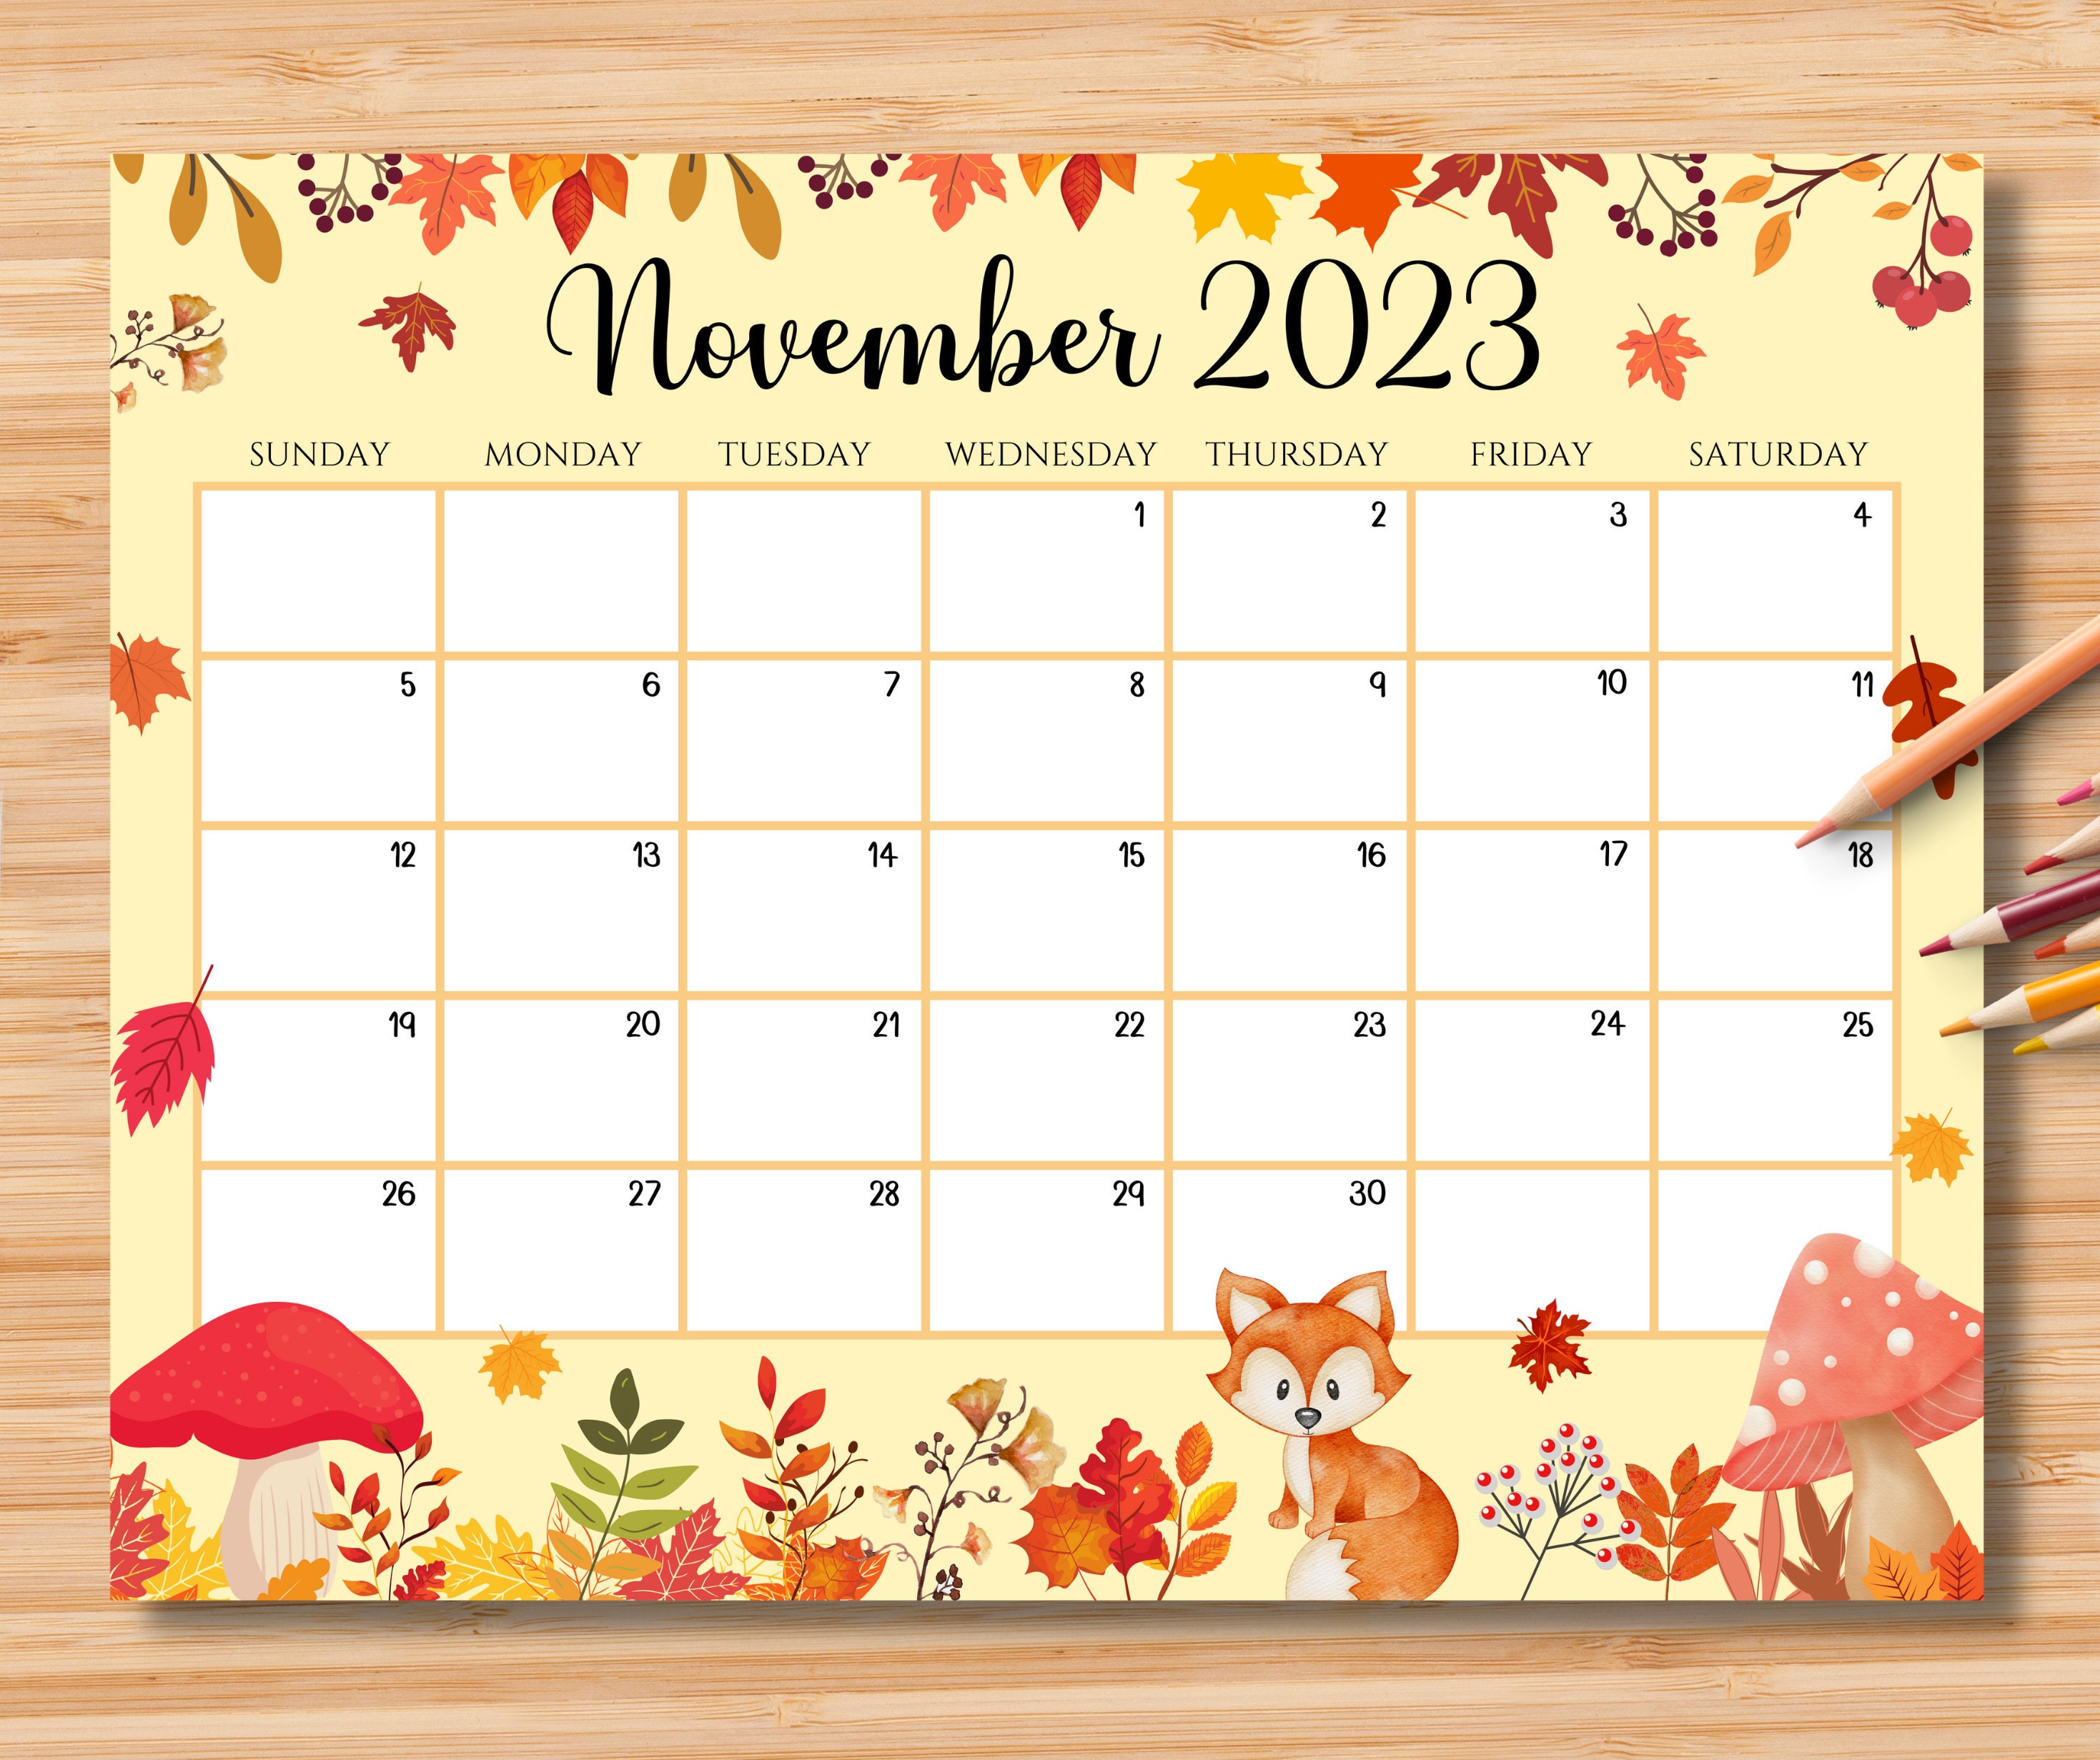 november-2023-calendar-downloadable-get-latest-map-update